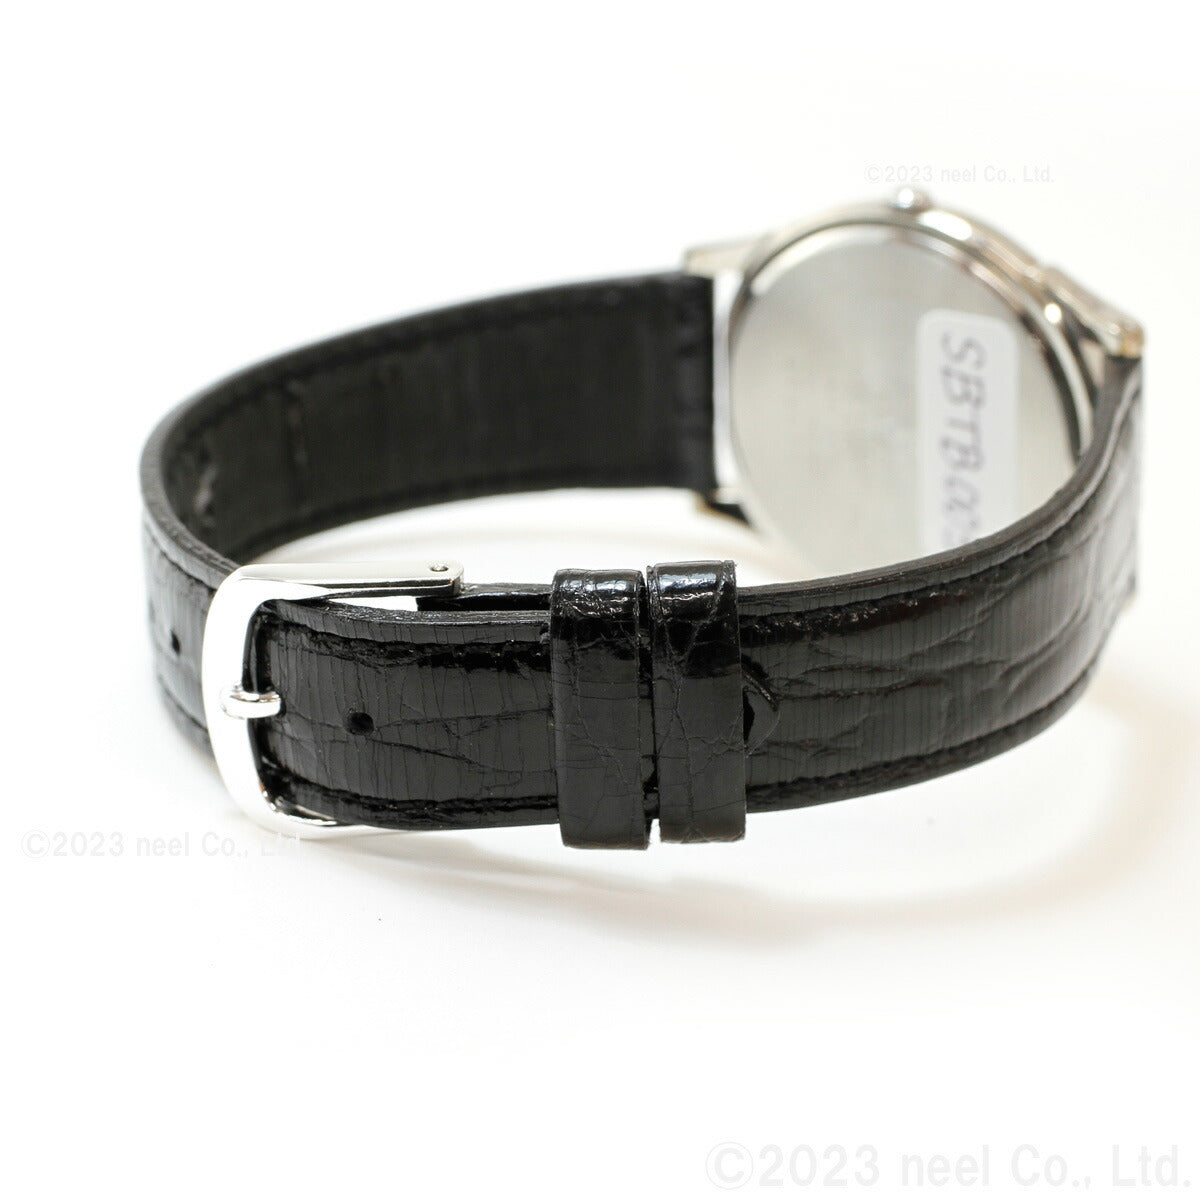 セイコー セレクション SEIKO SELECTION 腕時計 メンズ レディース ペアモデル SBTB005 STTC005